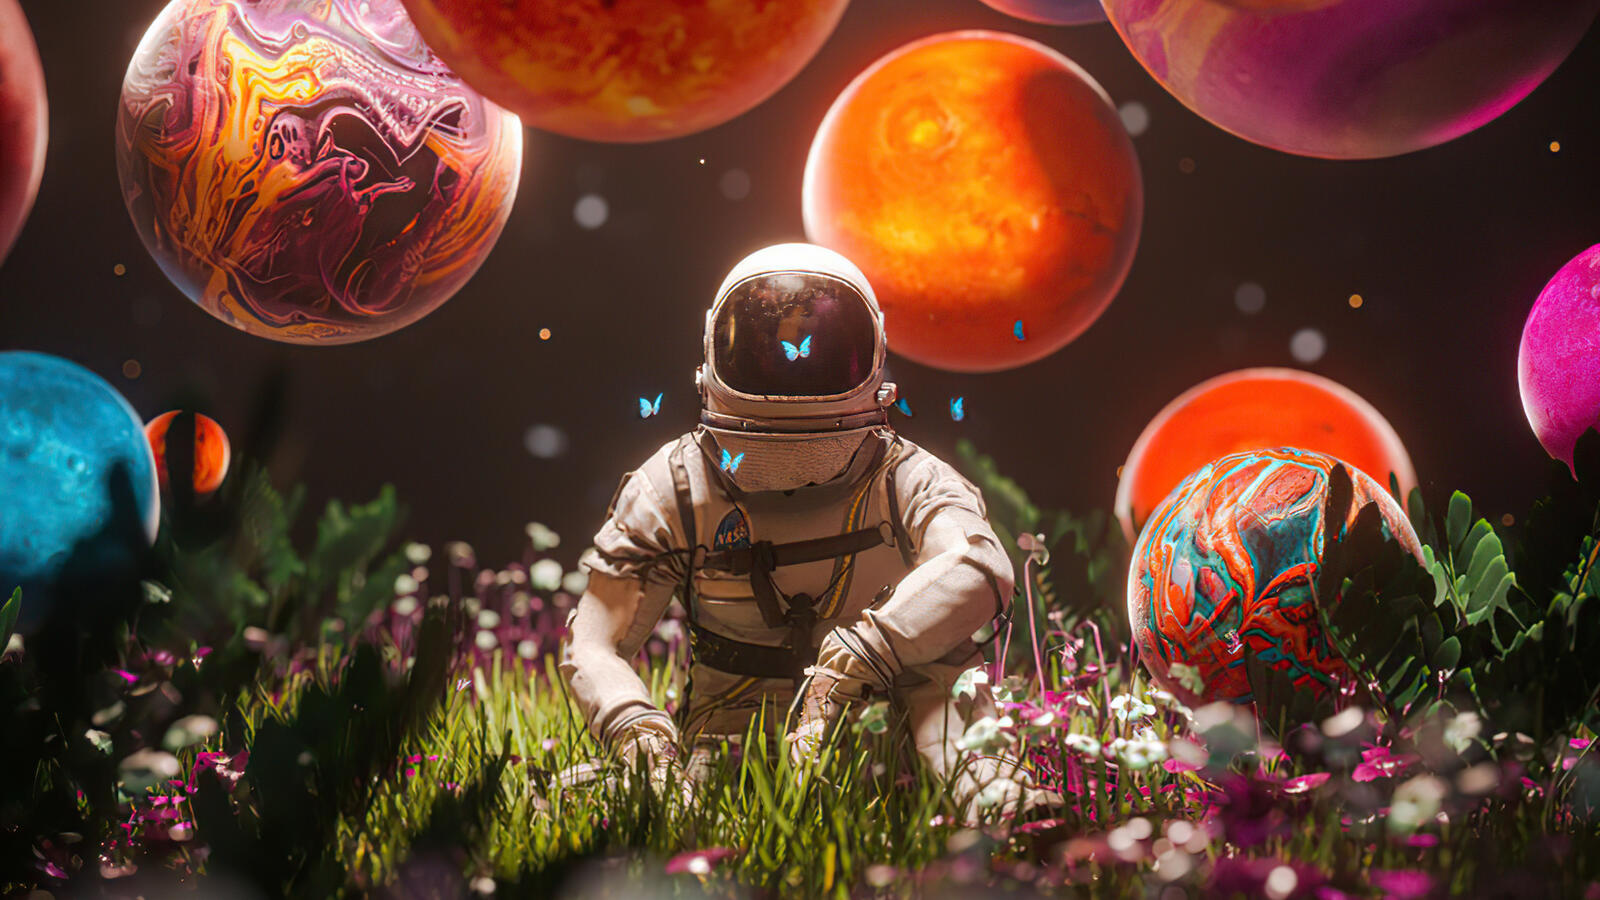 Бесплатное фото Фантастическая фотография космонавт и планеты